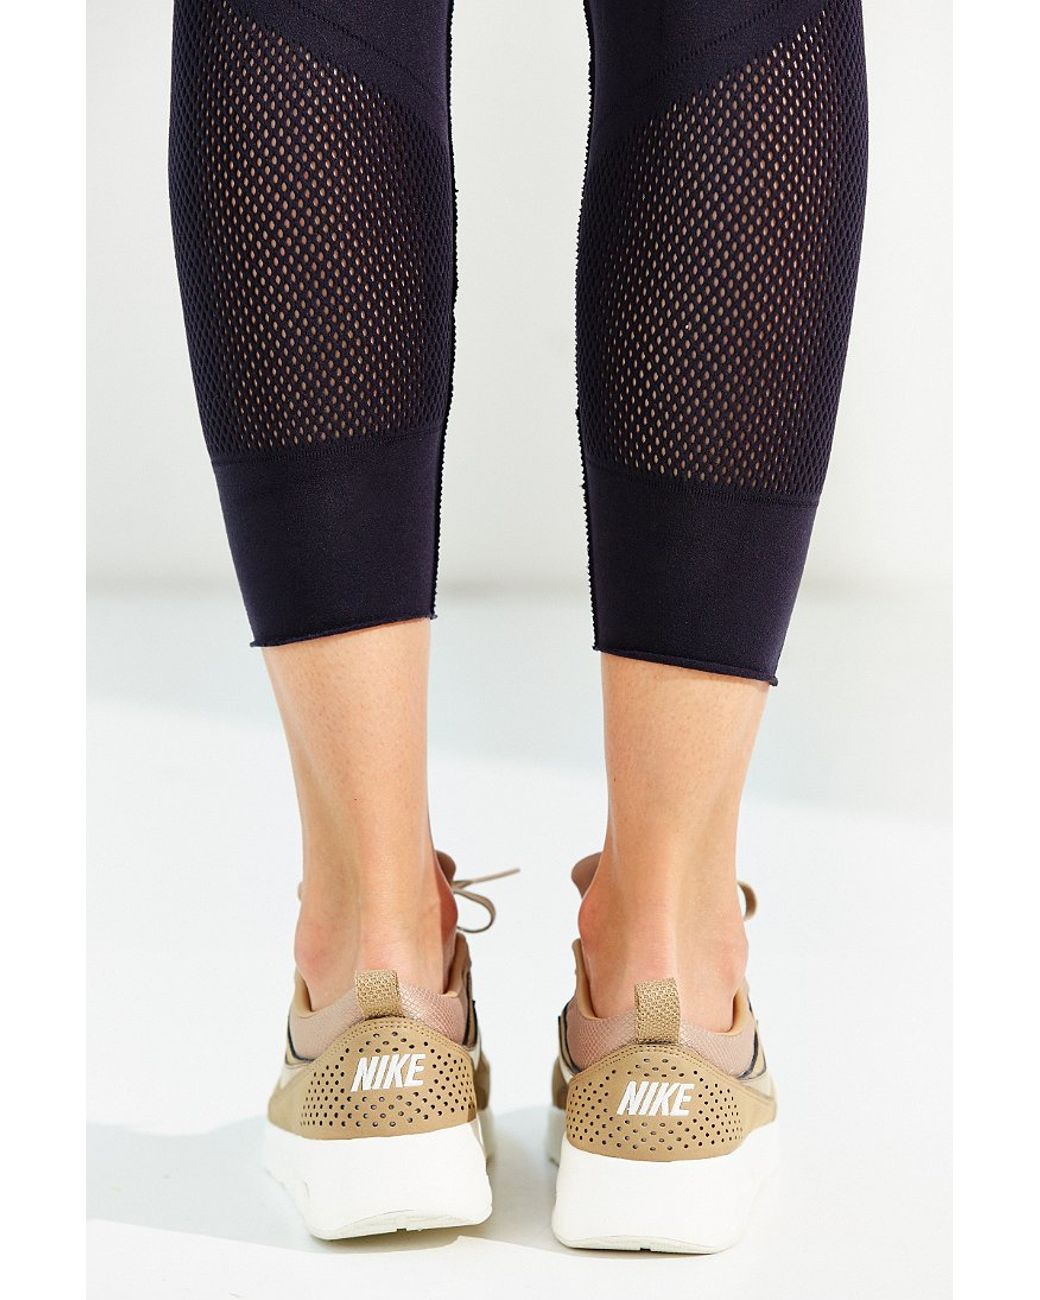 Nike Air Max Thea Premium Sneaker in Tan (Brown) | Lyst